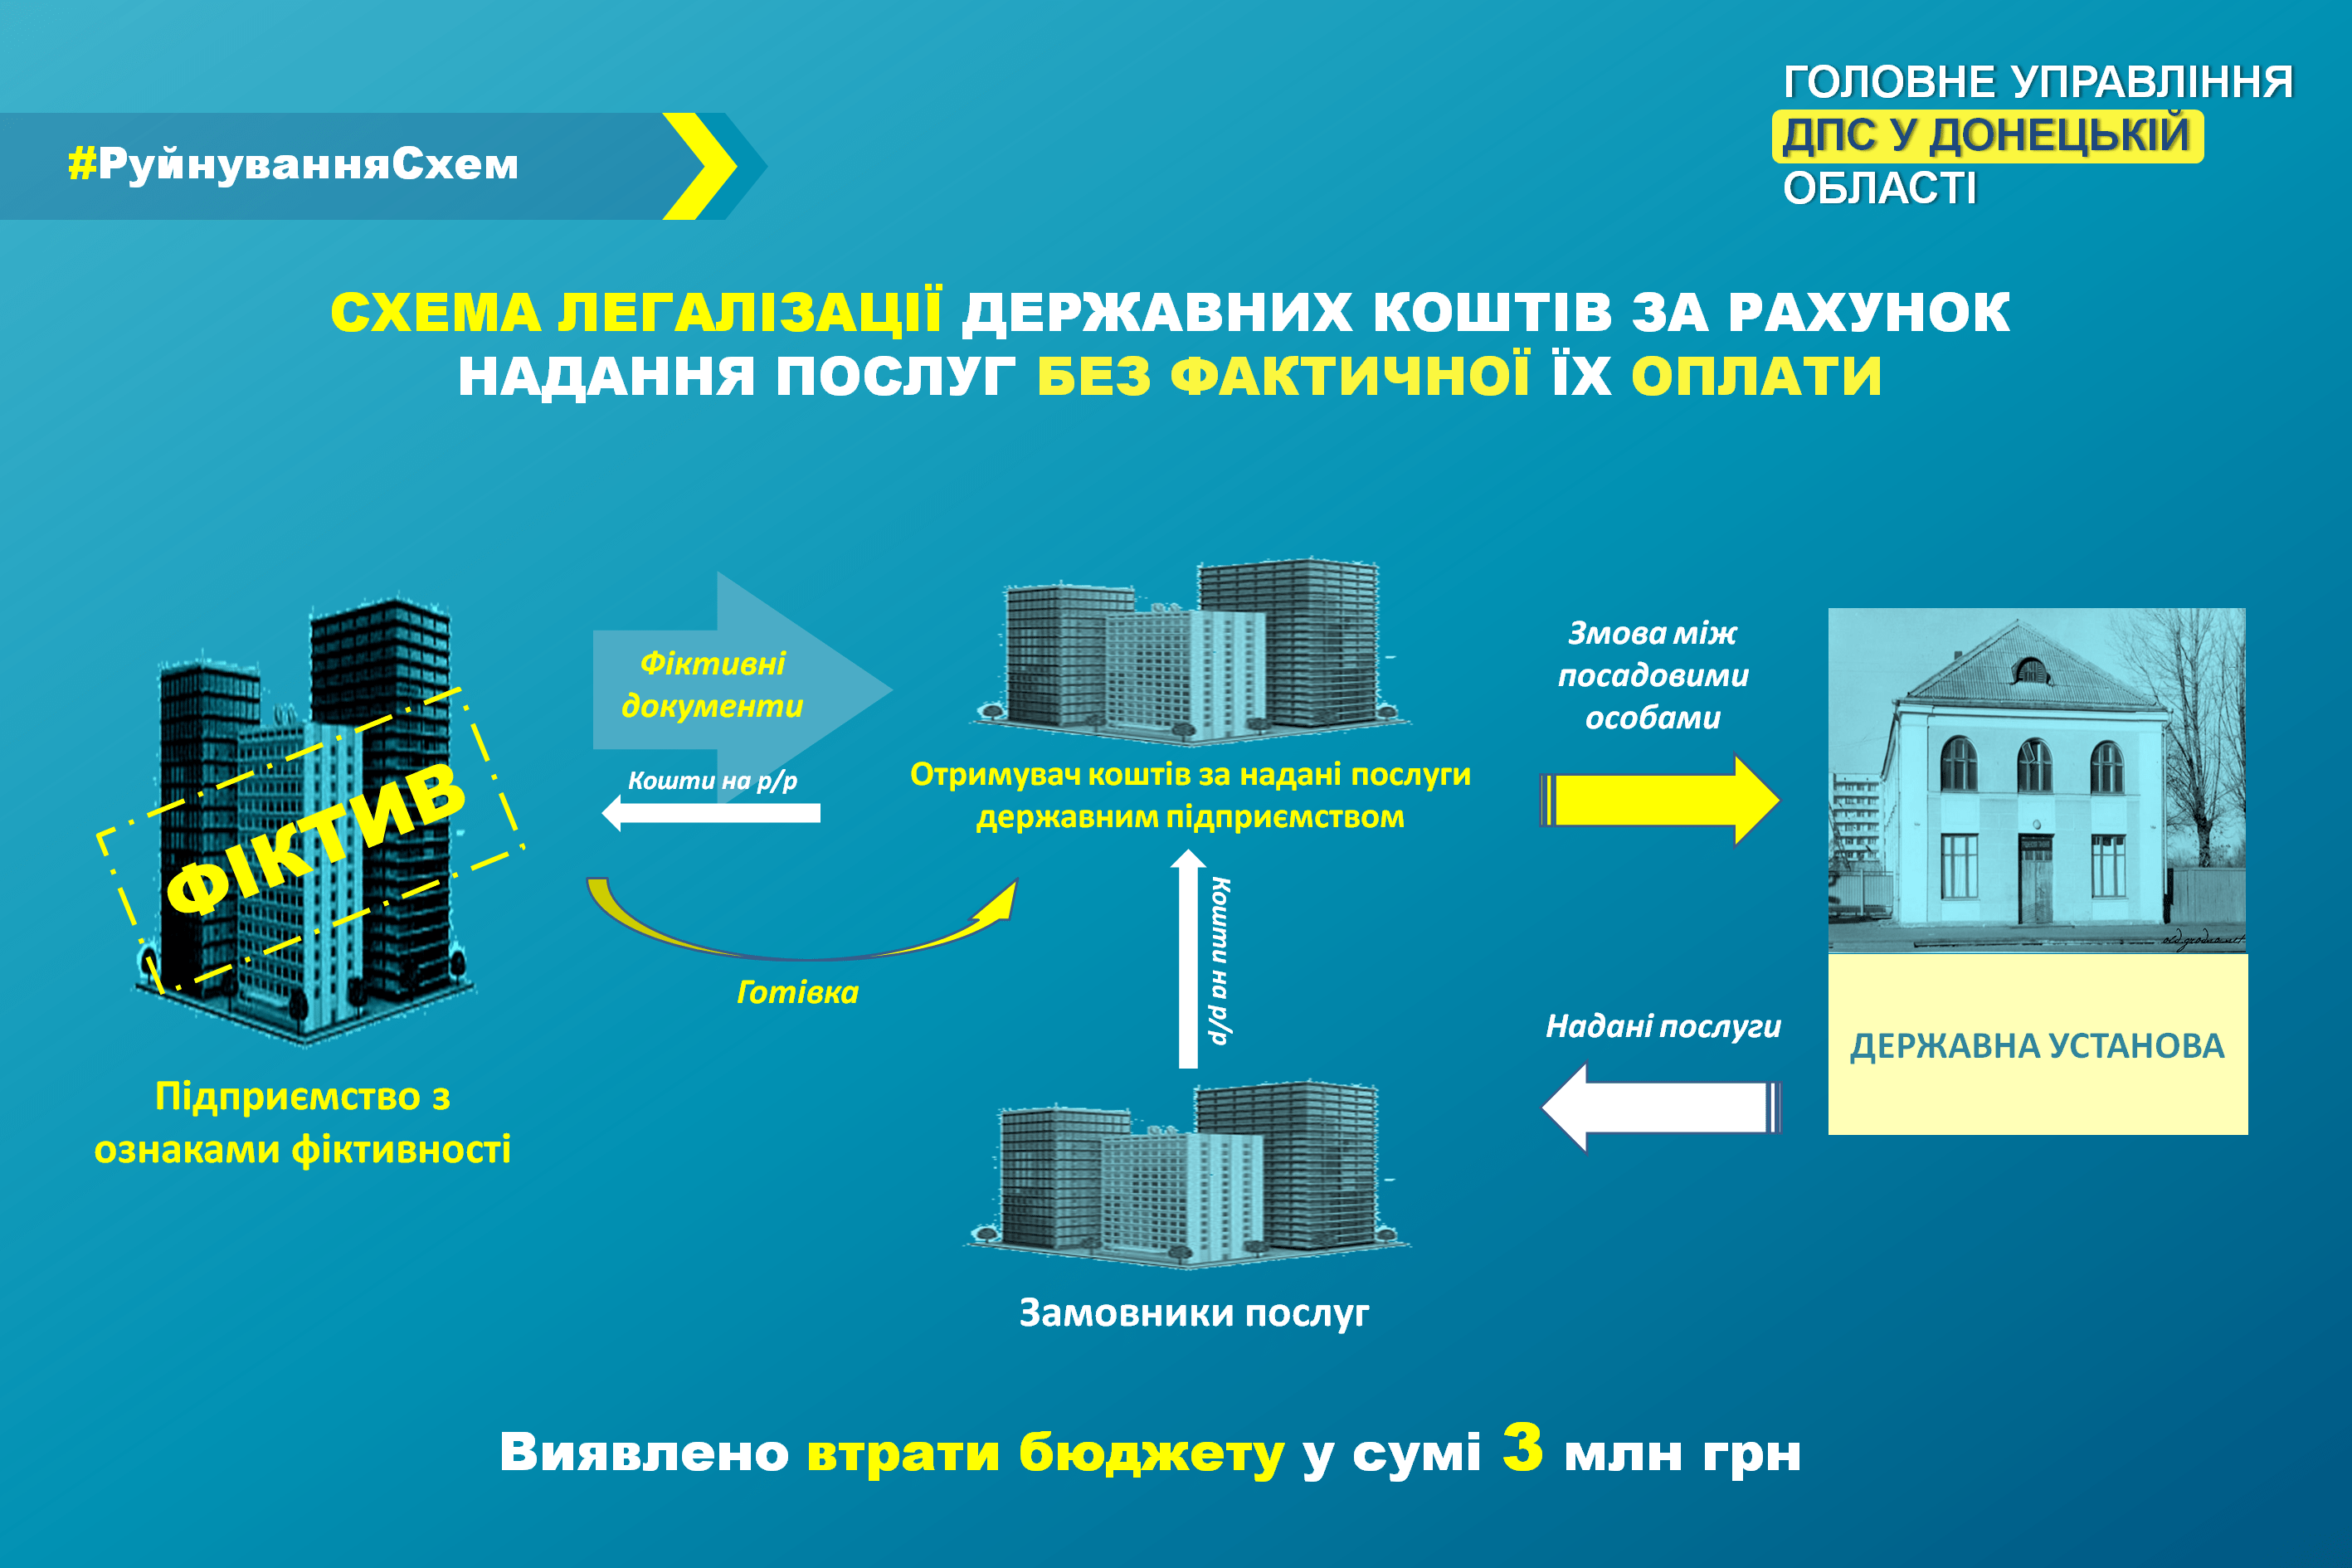 На Донеччині викрито схему фіктивного виконання метрологічних робіт державному підприємству на 3 мільйона гривень